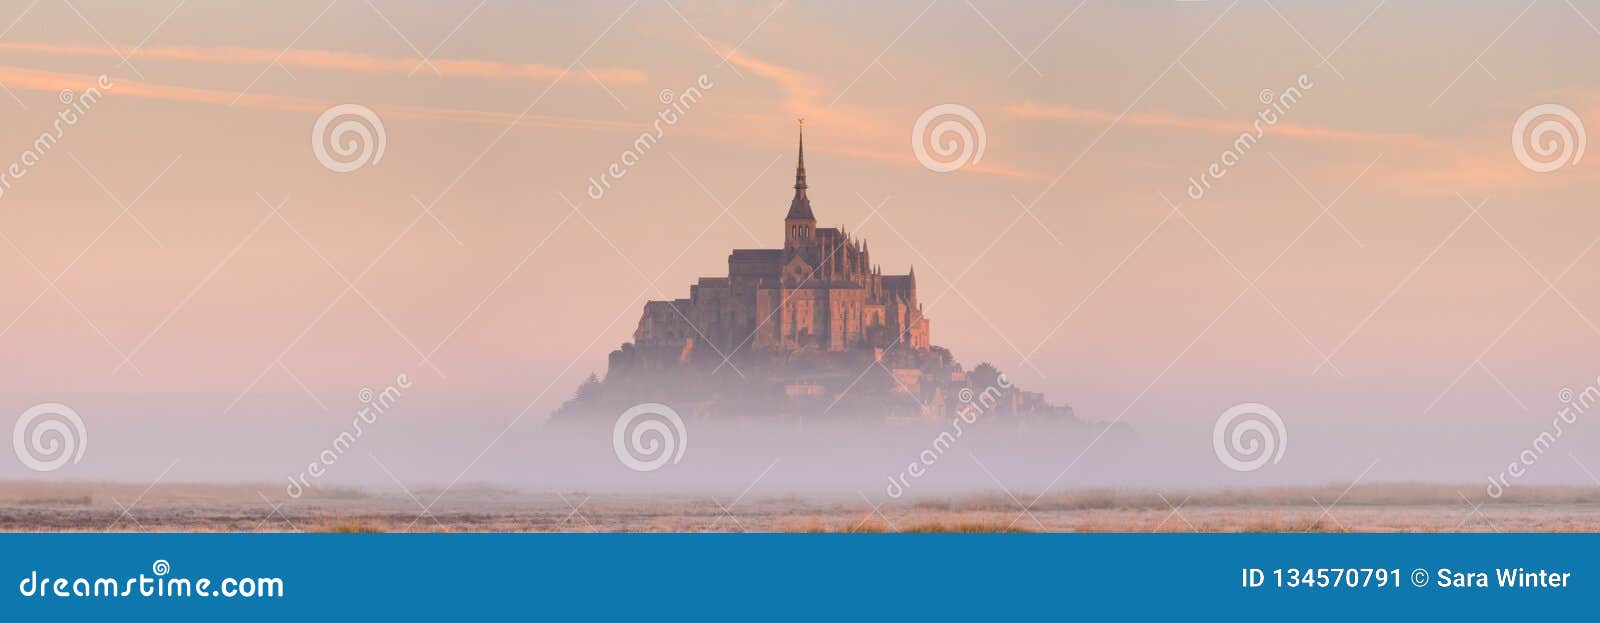 le mont saint michel in normandy, france at sunrise